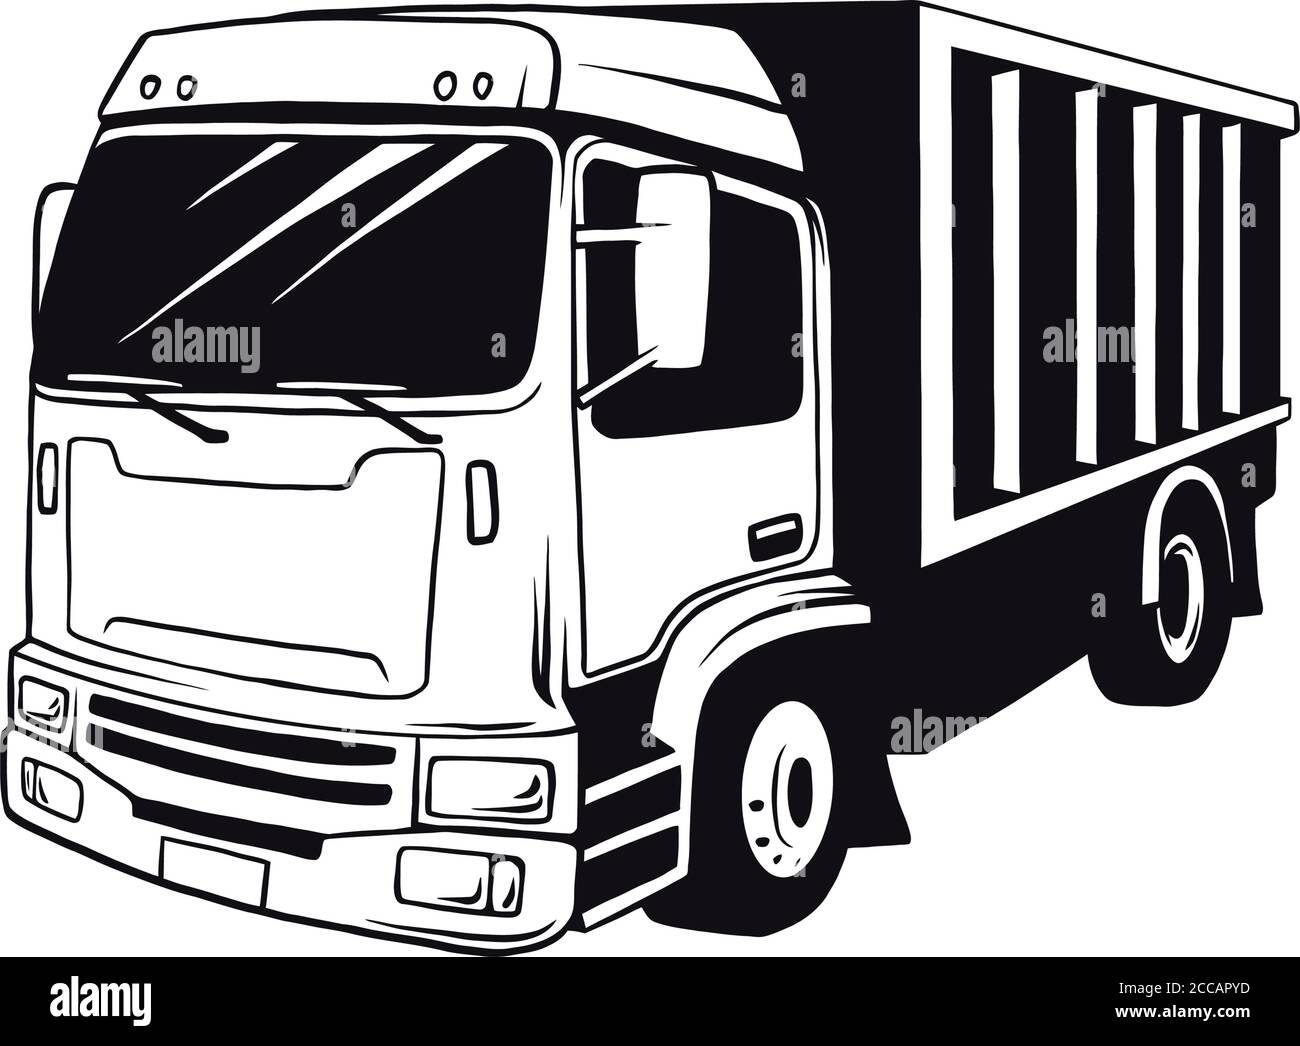 American Truck Trailer schwarz-weiß Illustration isoliert auf weiß Stock Vektor